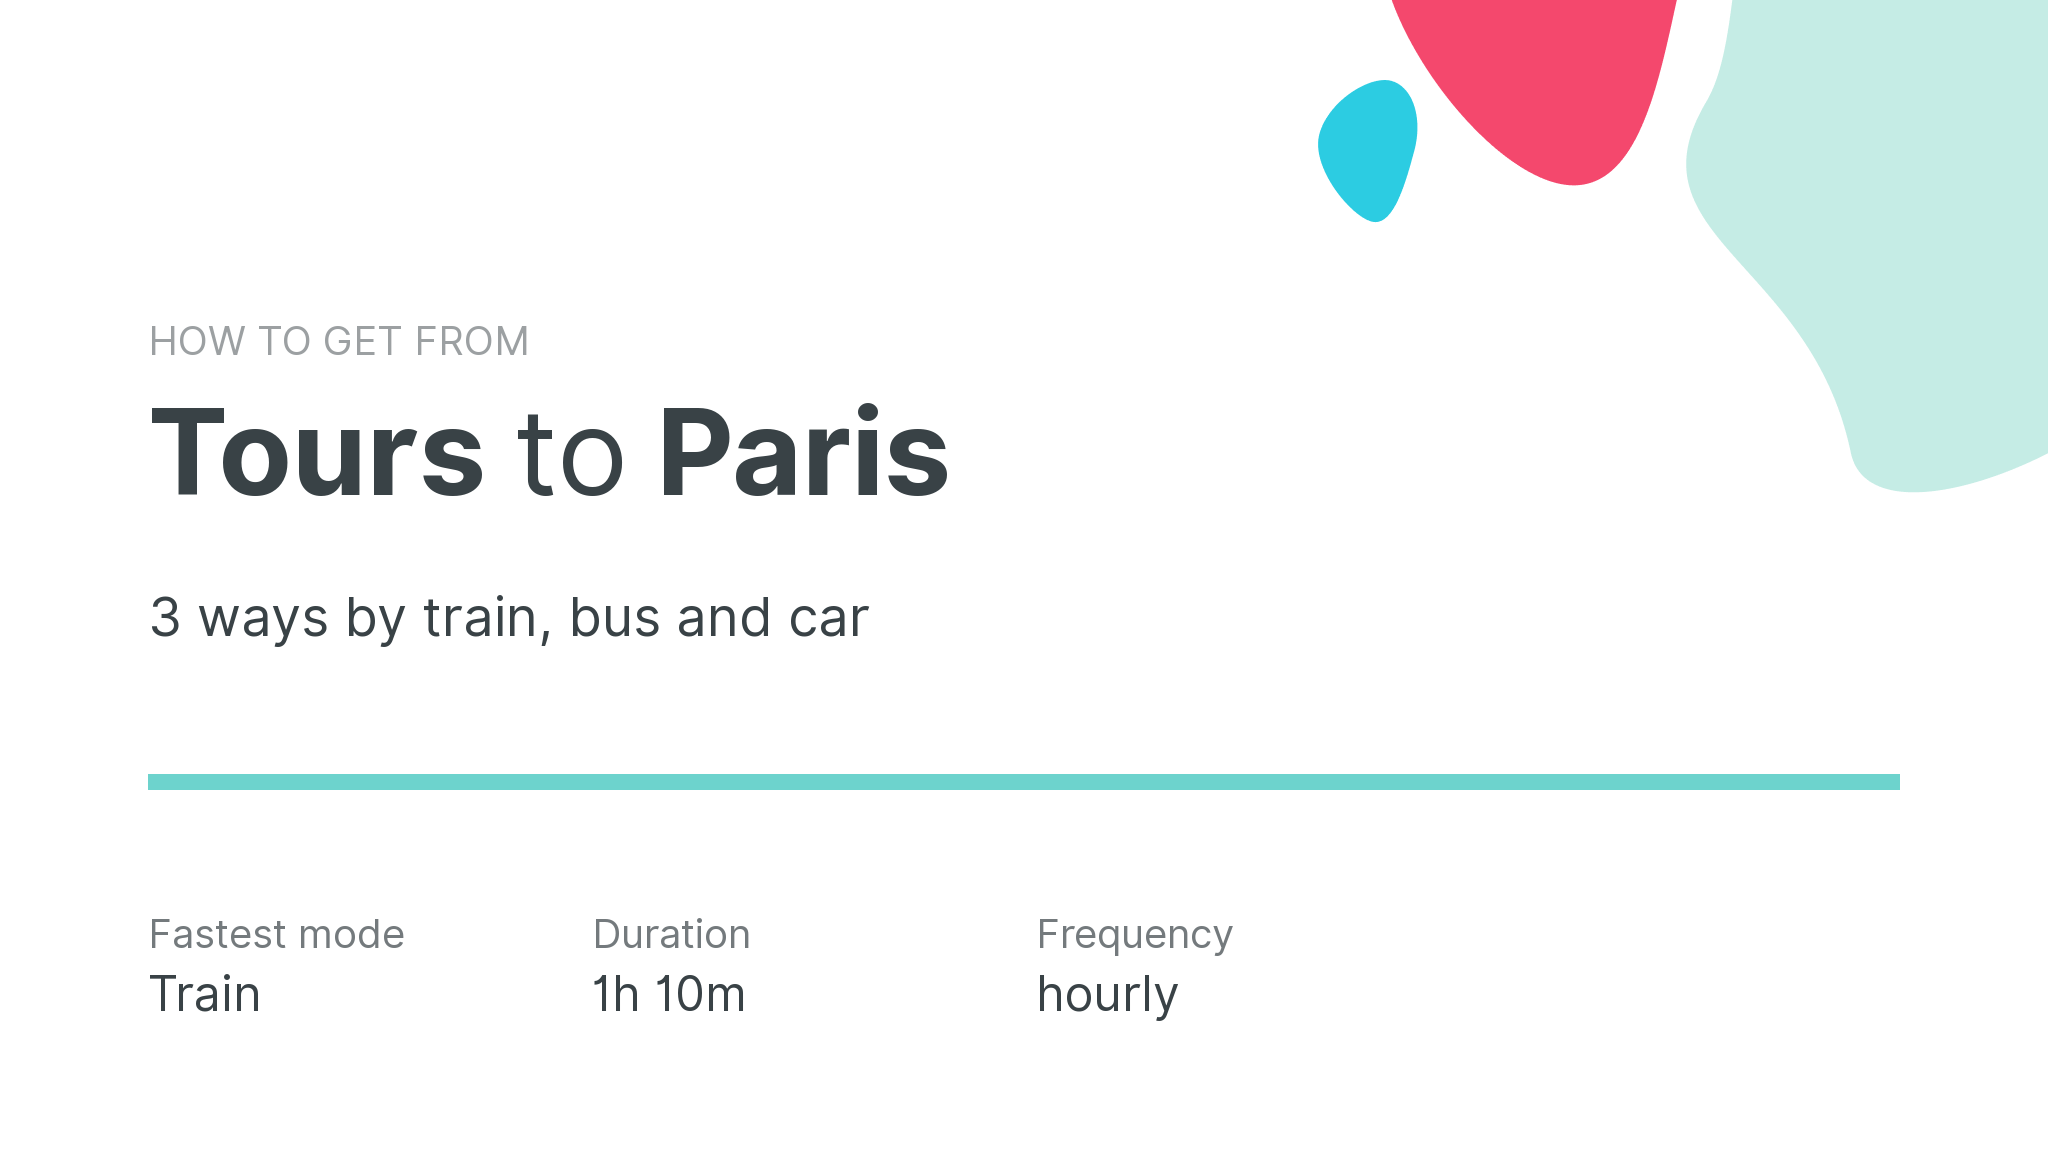 How do I get from Tours to Paris